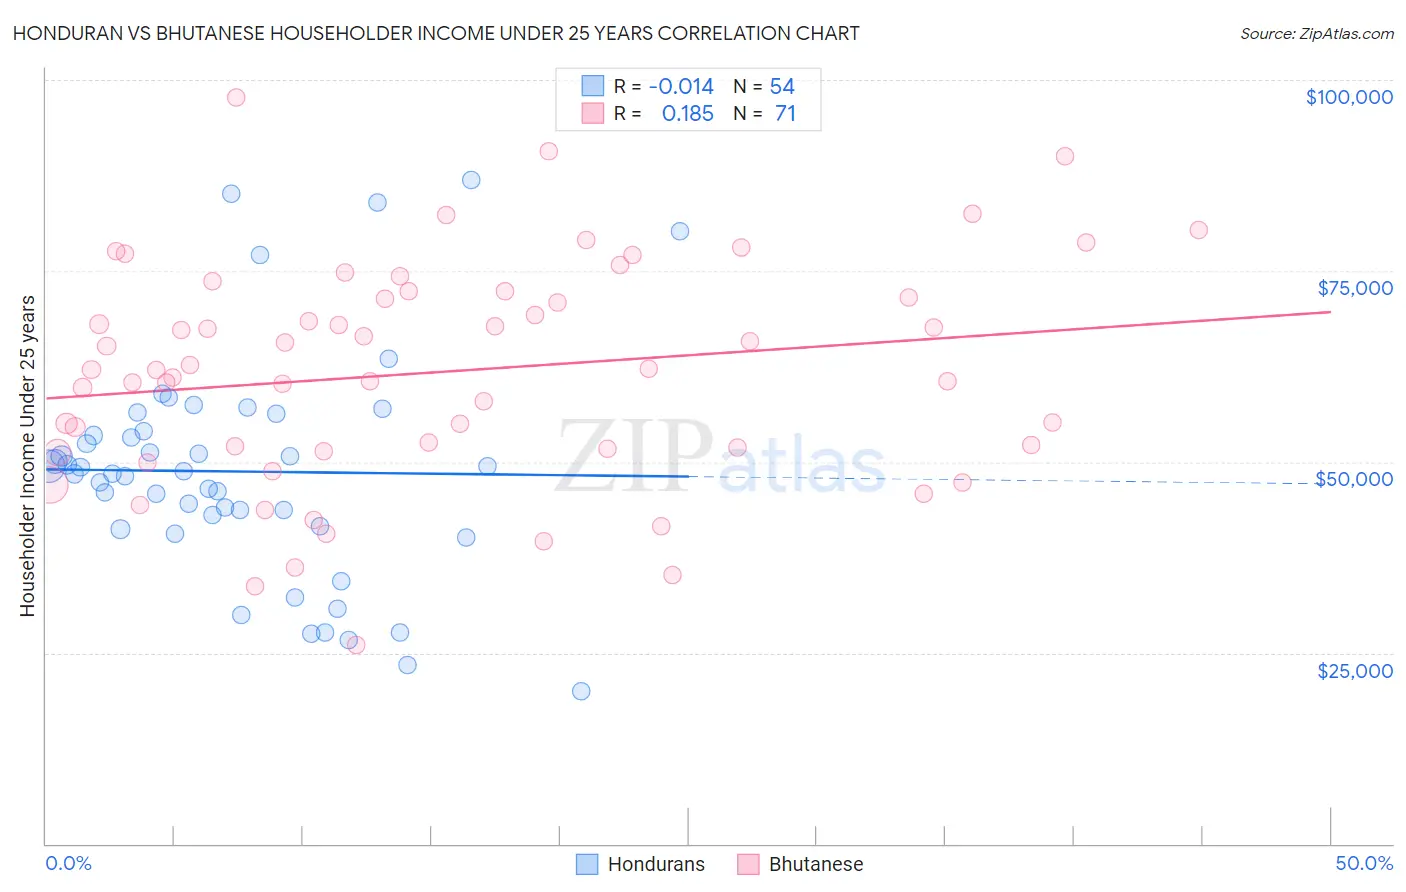 Honduran vs Bhutanese Householder Income Under 25 years